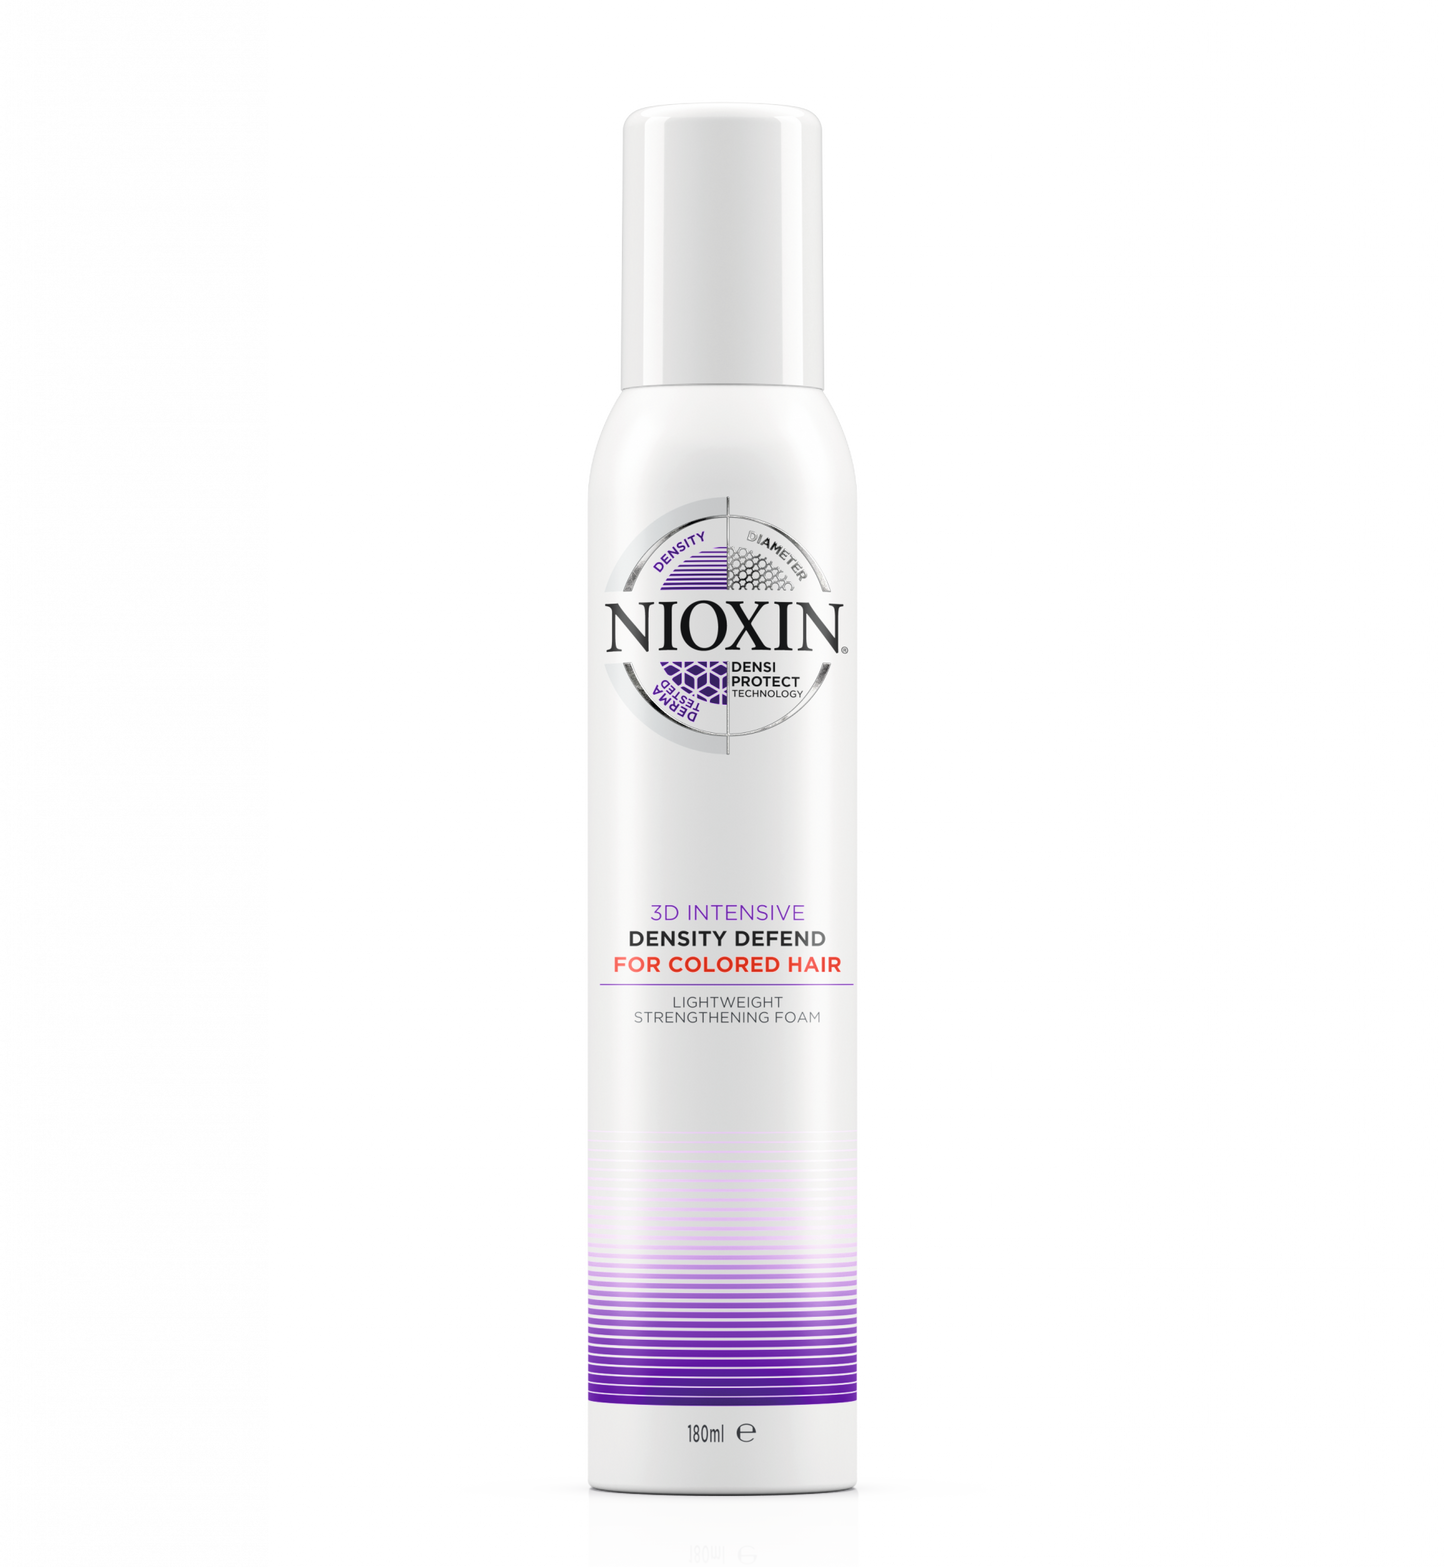 NIOXIN PROF DENSITY DEFEND FOAM 200ML - Kess Hair and Beauty